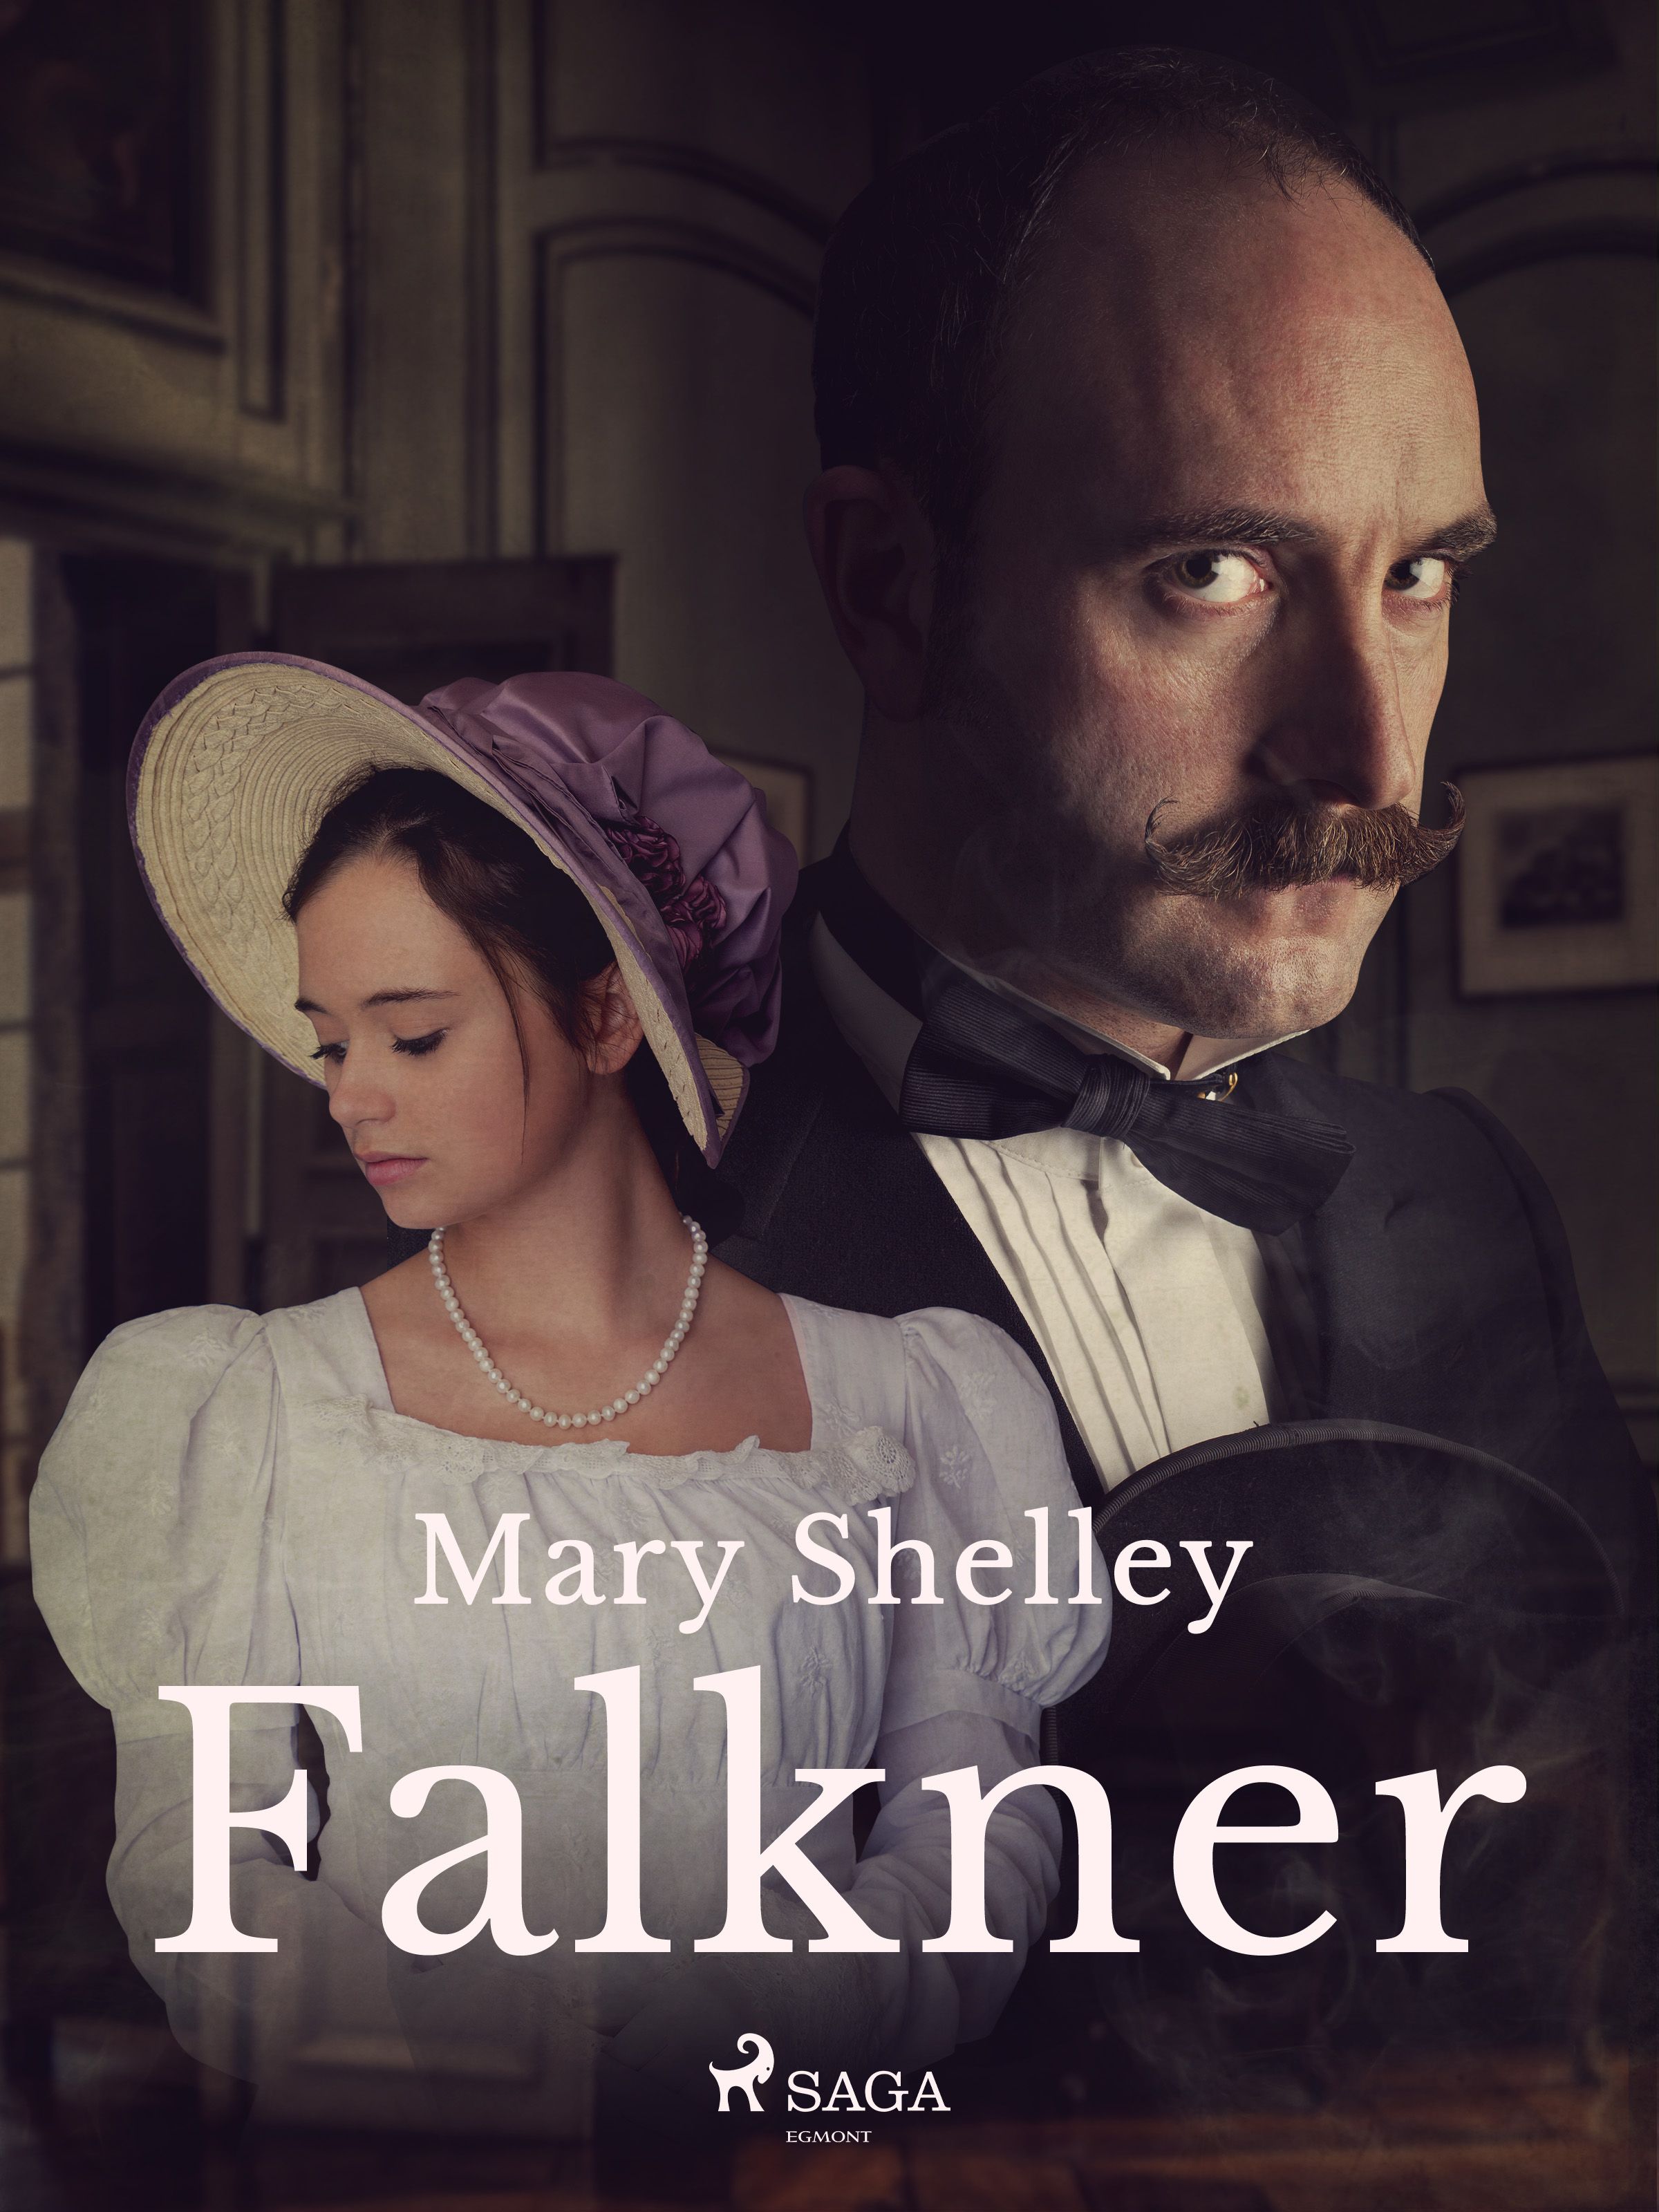 Falkner, eBook by Mary Shelley